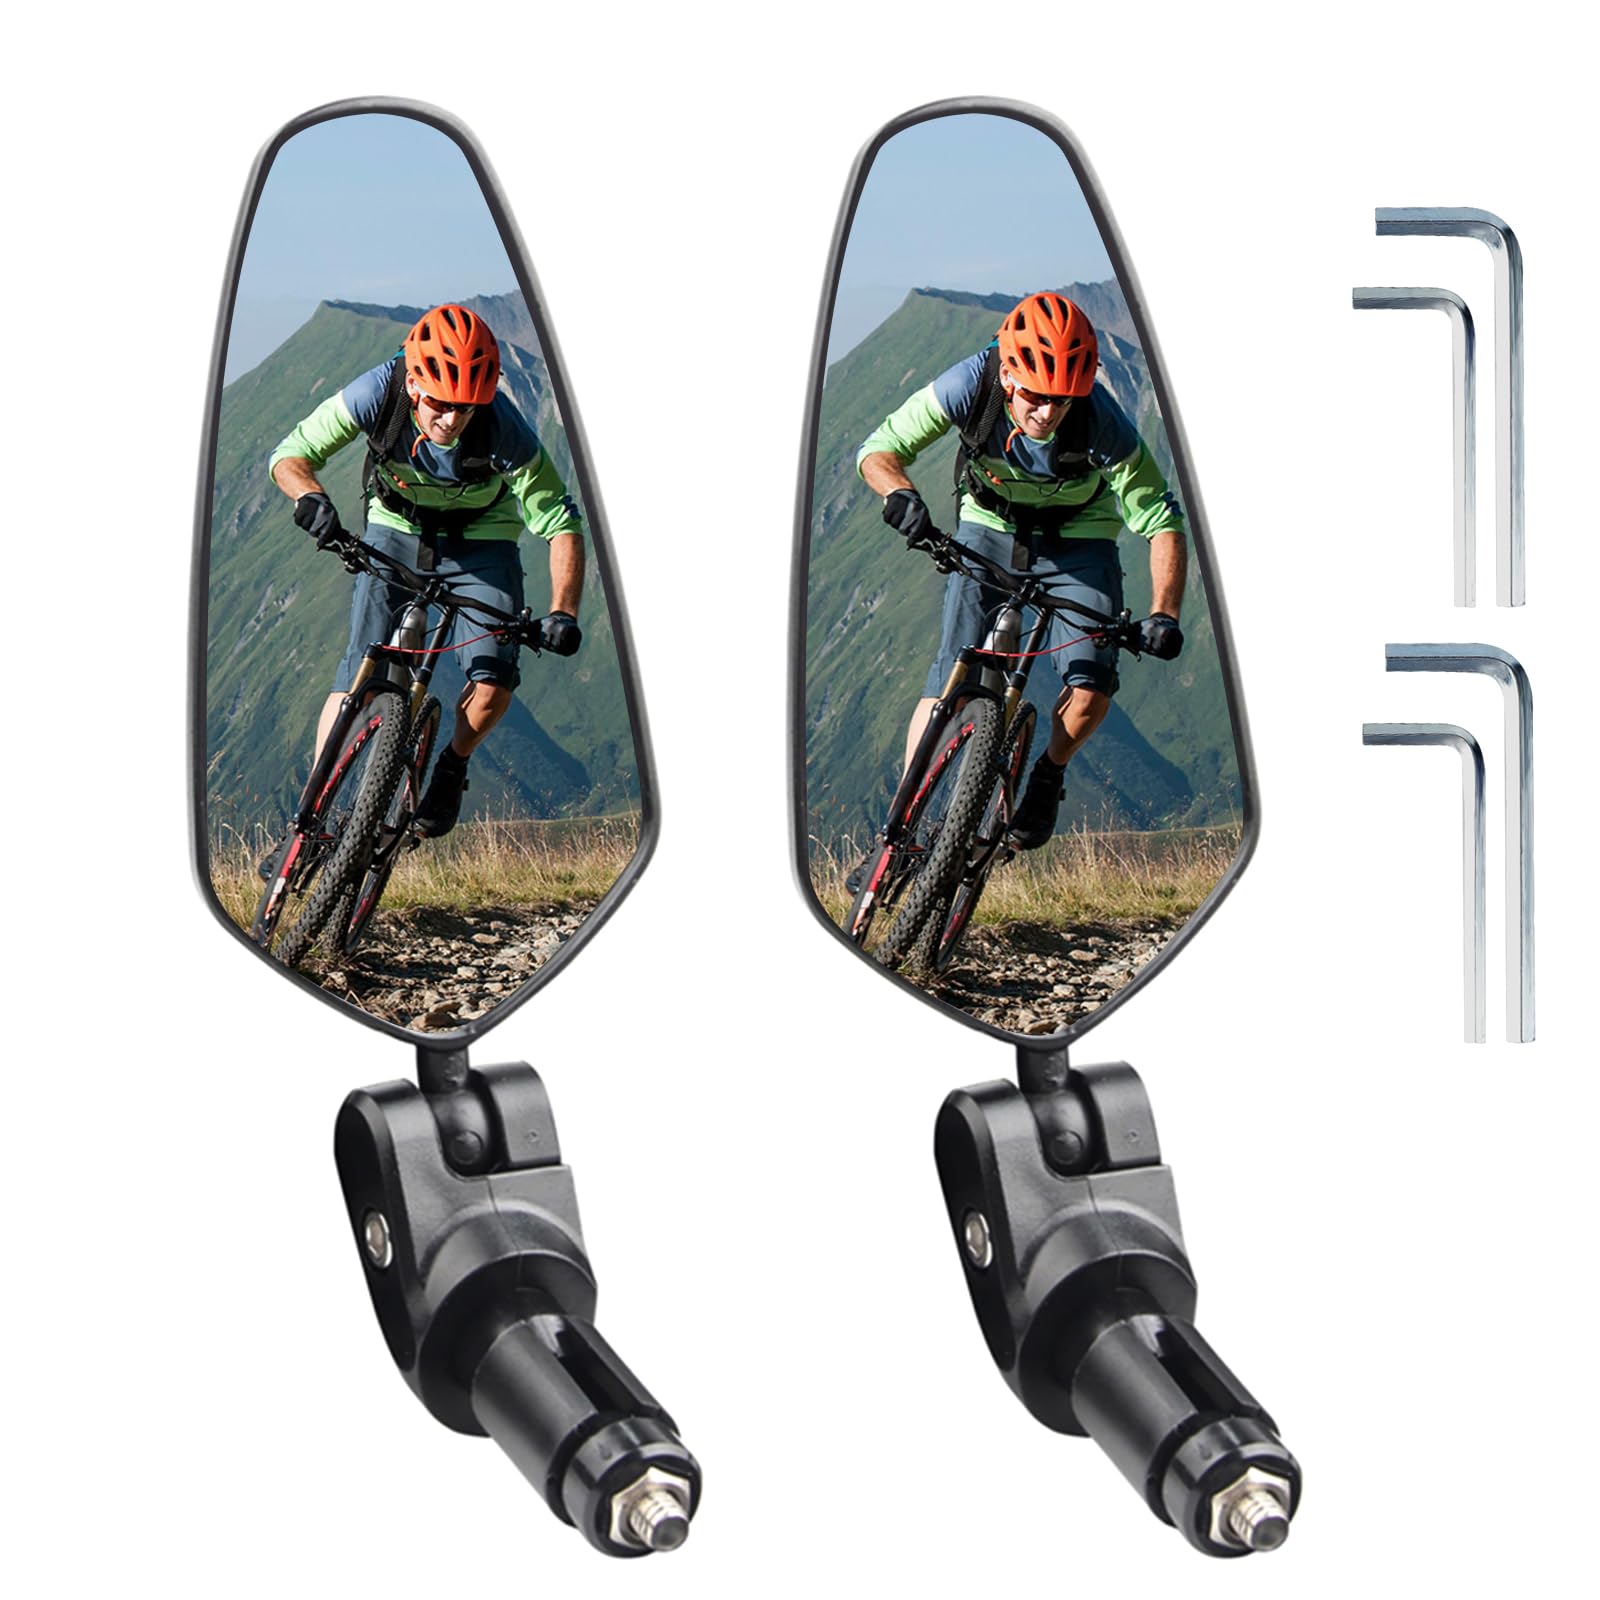 2 Stück Rückspiegel Fahrrad,Fahrradspiegel Klappbarer,Fahrrad Spiegel Lenker 17.4-22mm,Universelle Linke und Rechte Spiegel für Fahrrad (Schwarz-2 Stück) von xiaowanwan